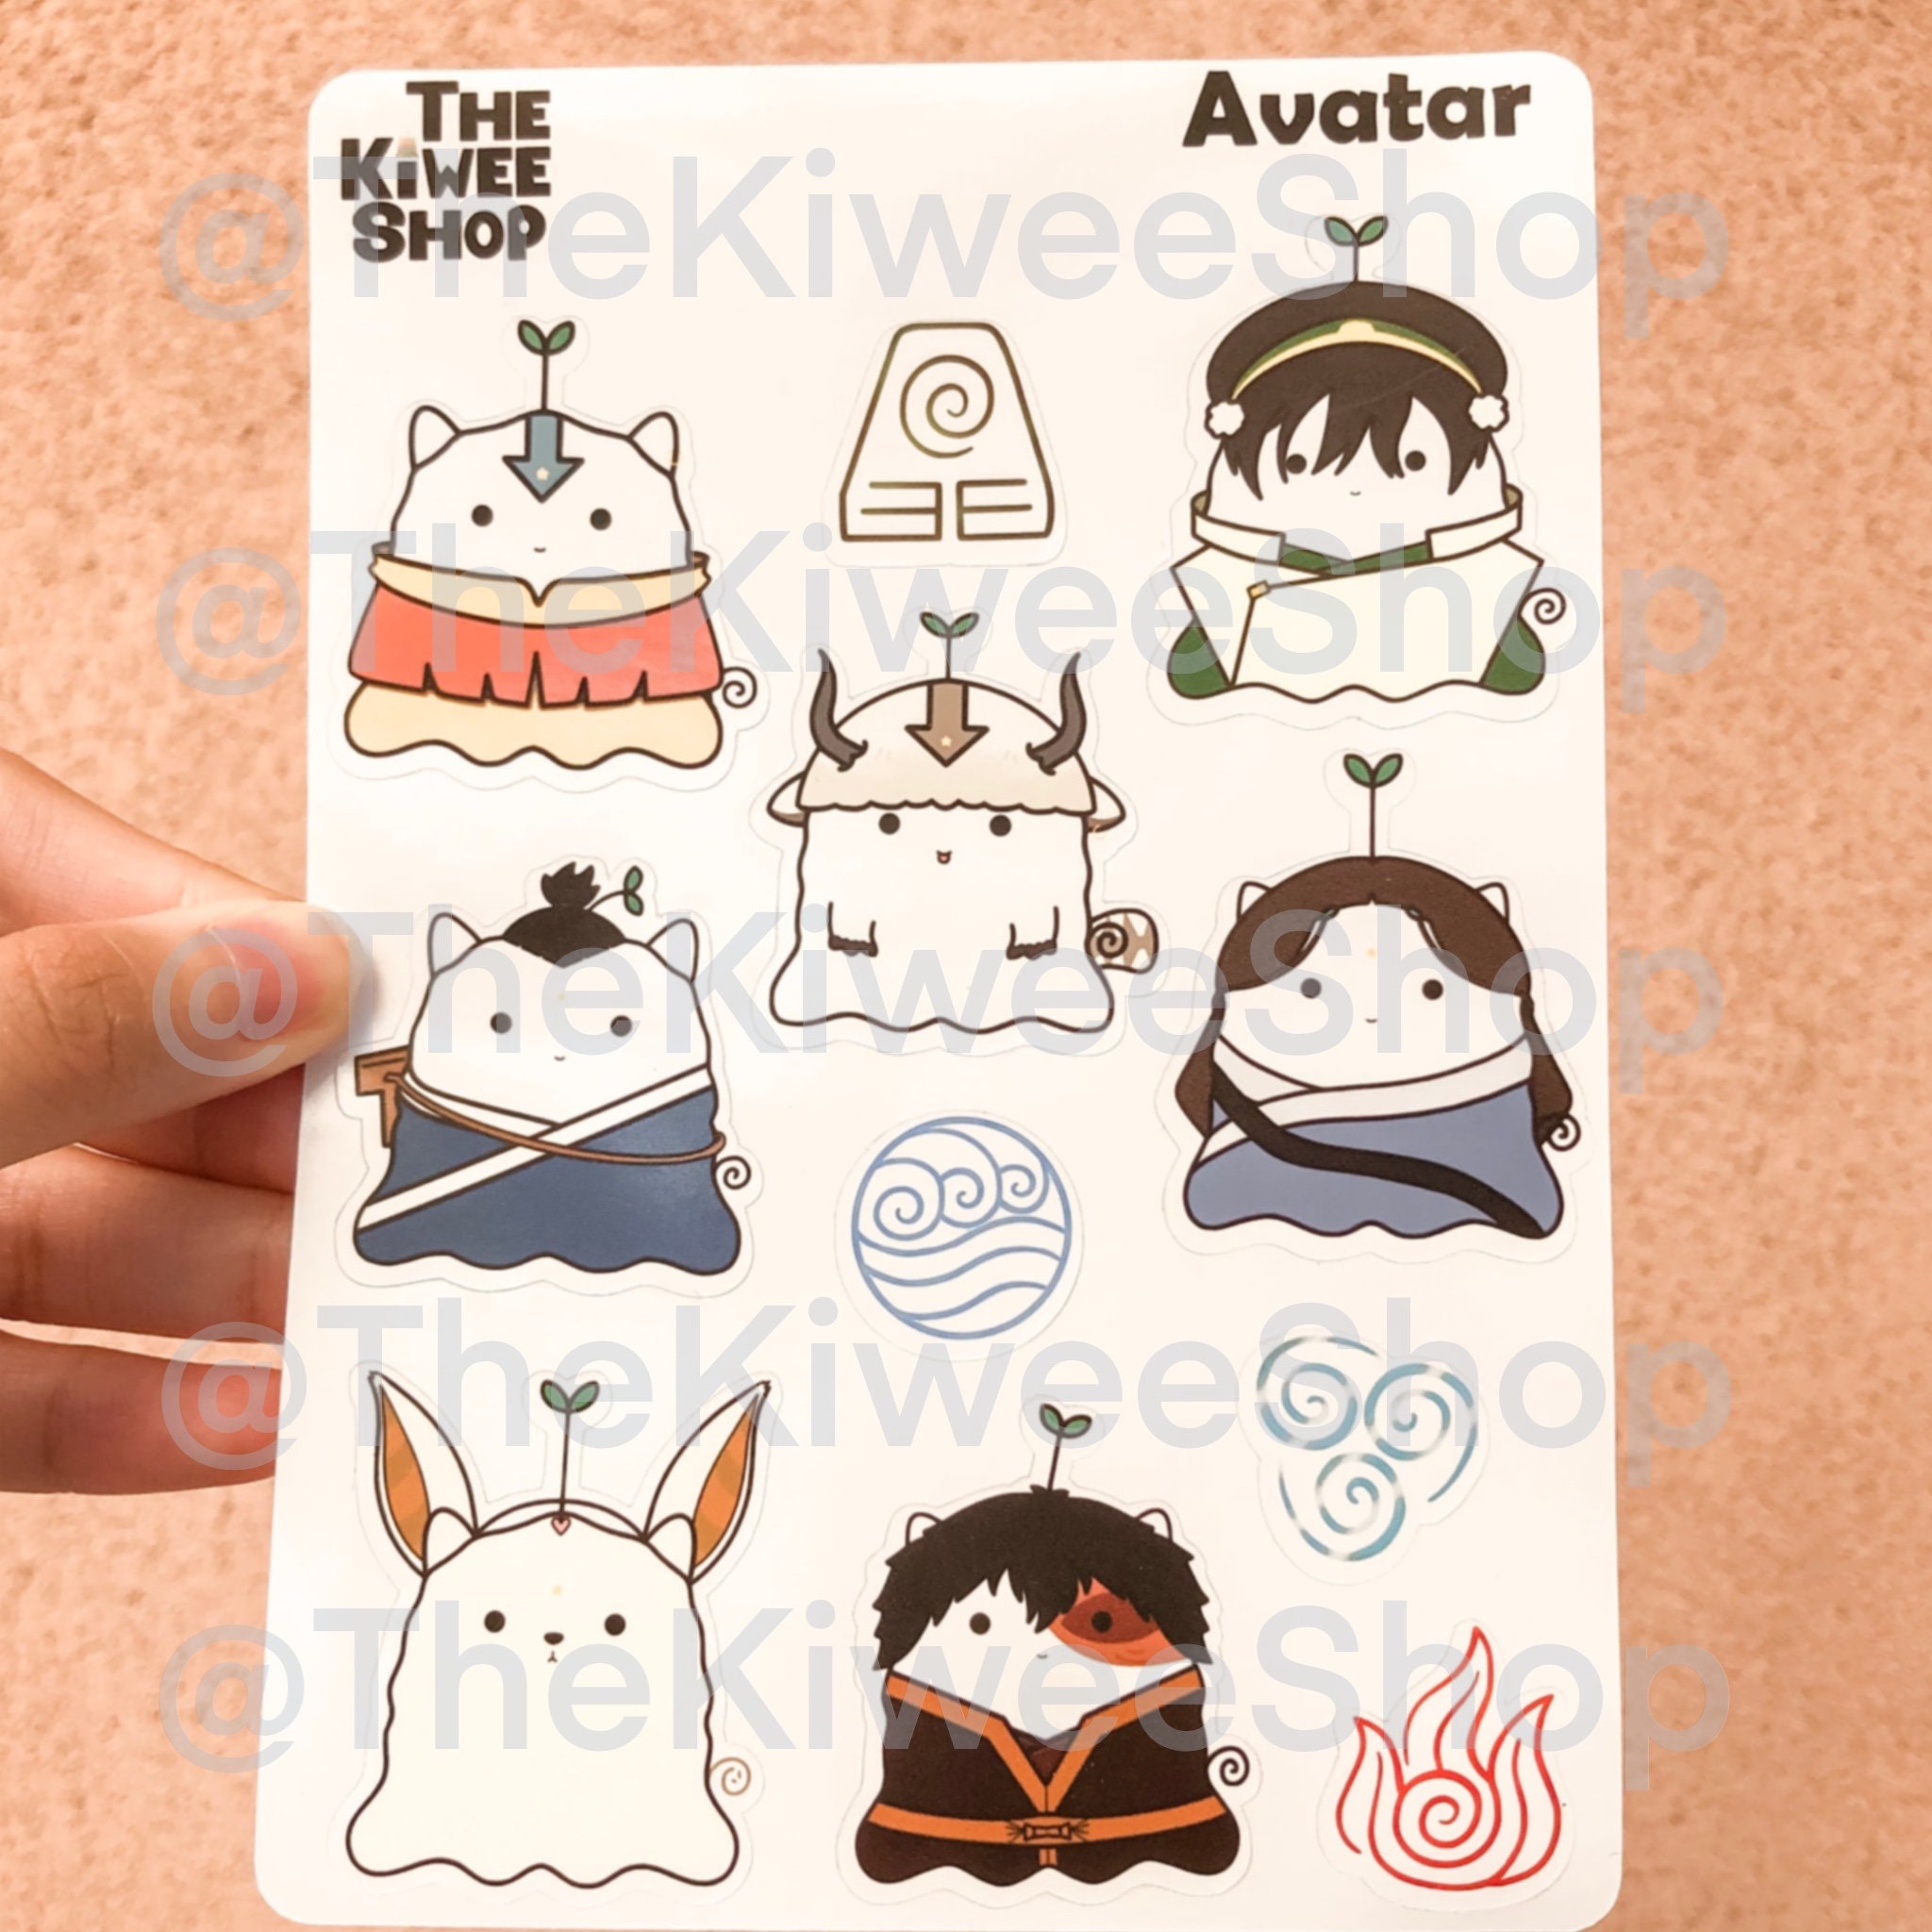 Kiwee Avatar Stickers là một sự lựa chọn tuyệt vời để tạo động lực cho bạn trong công việc của mình. Hãy xem hình ảnh để được trải nghiệm những tiện ích của những nhãn dán này.